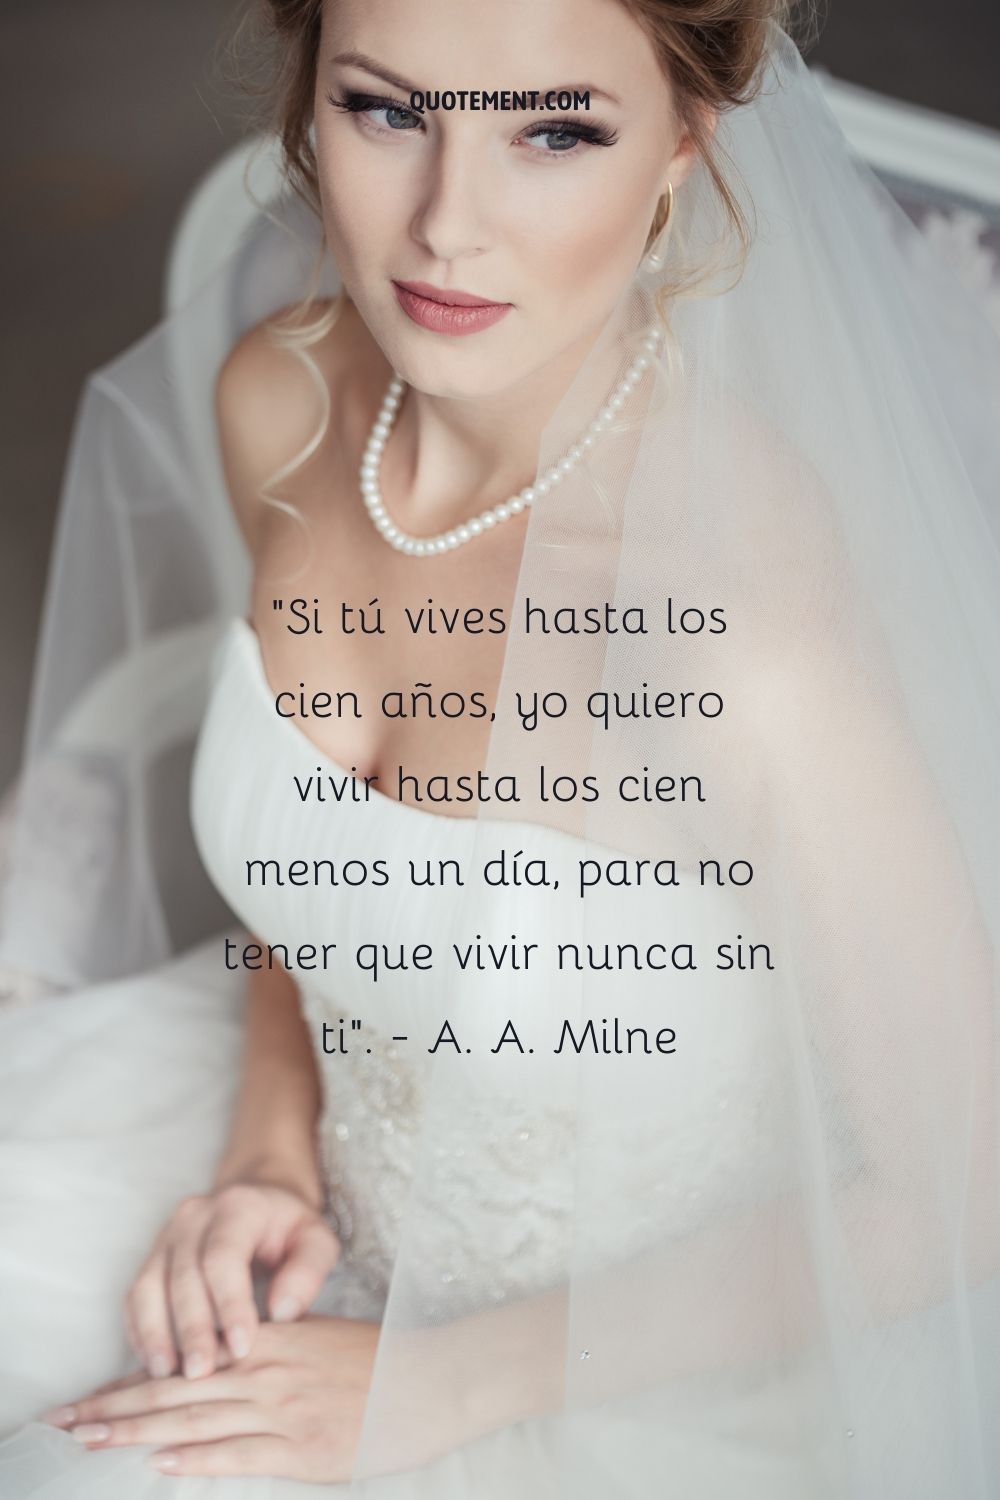 "Si tú vives hasta los cien años, yo quiero vivir hasta los cien menos un día, para no tener que vivir nunca sin ti". - A. A. Milne